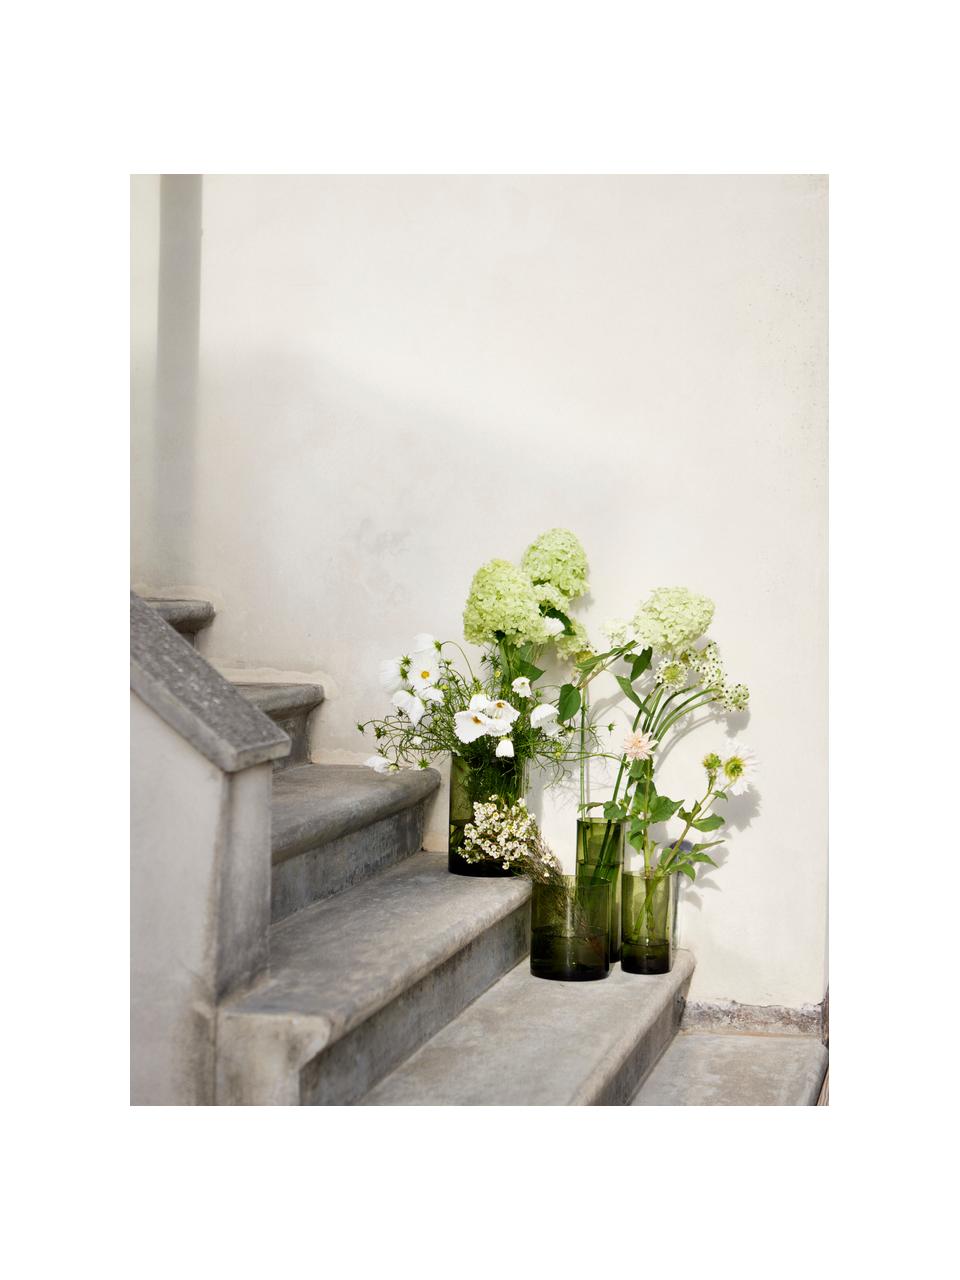 Skleněná váza Salon, Sklo, Zelená, transparentní, Ø 17 cm, V 20 cm